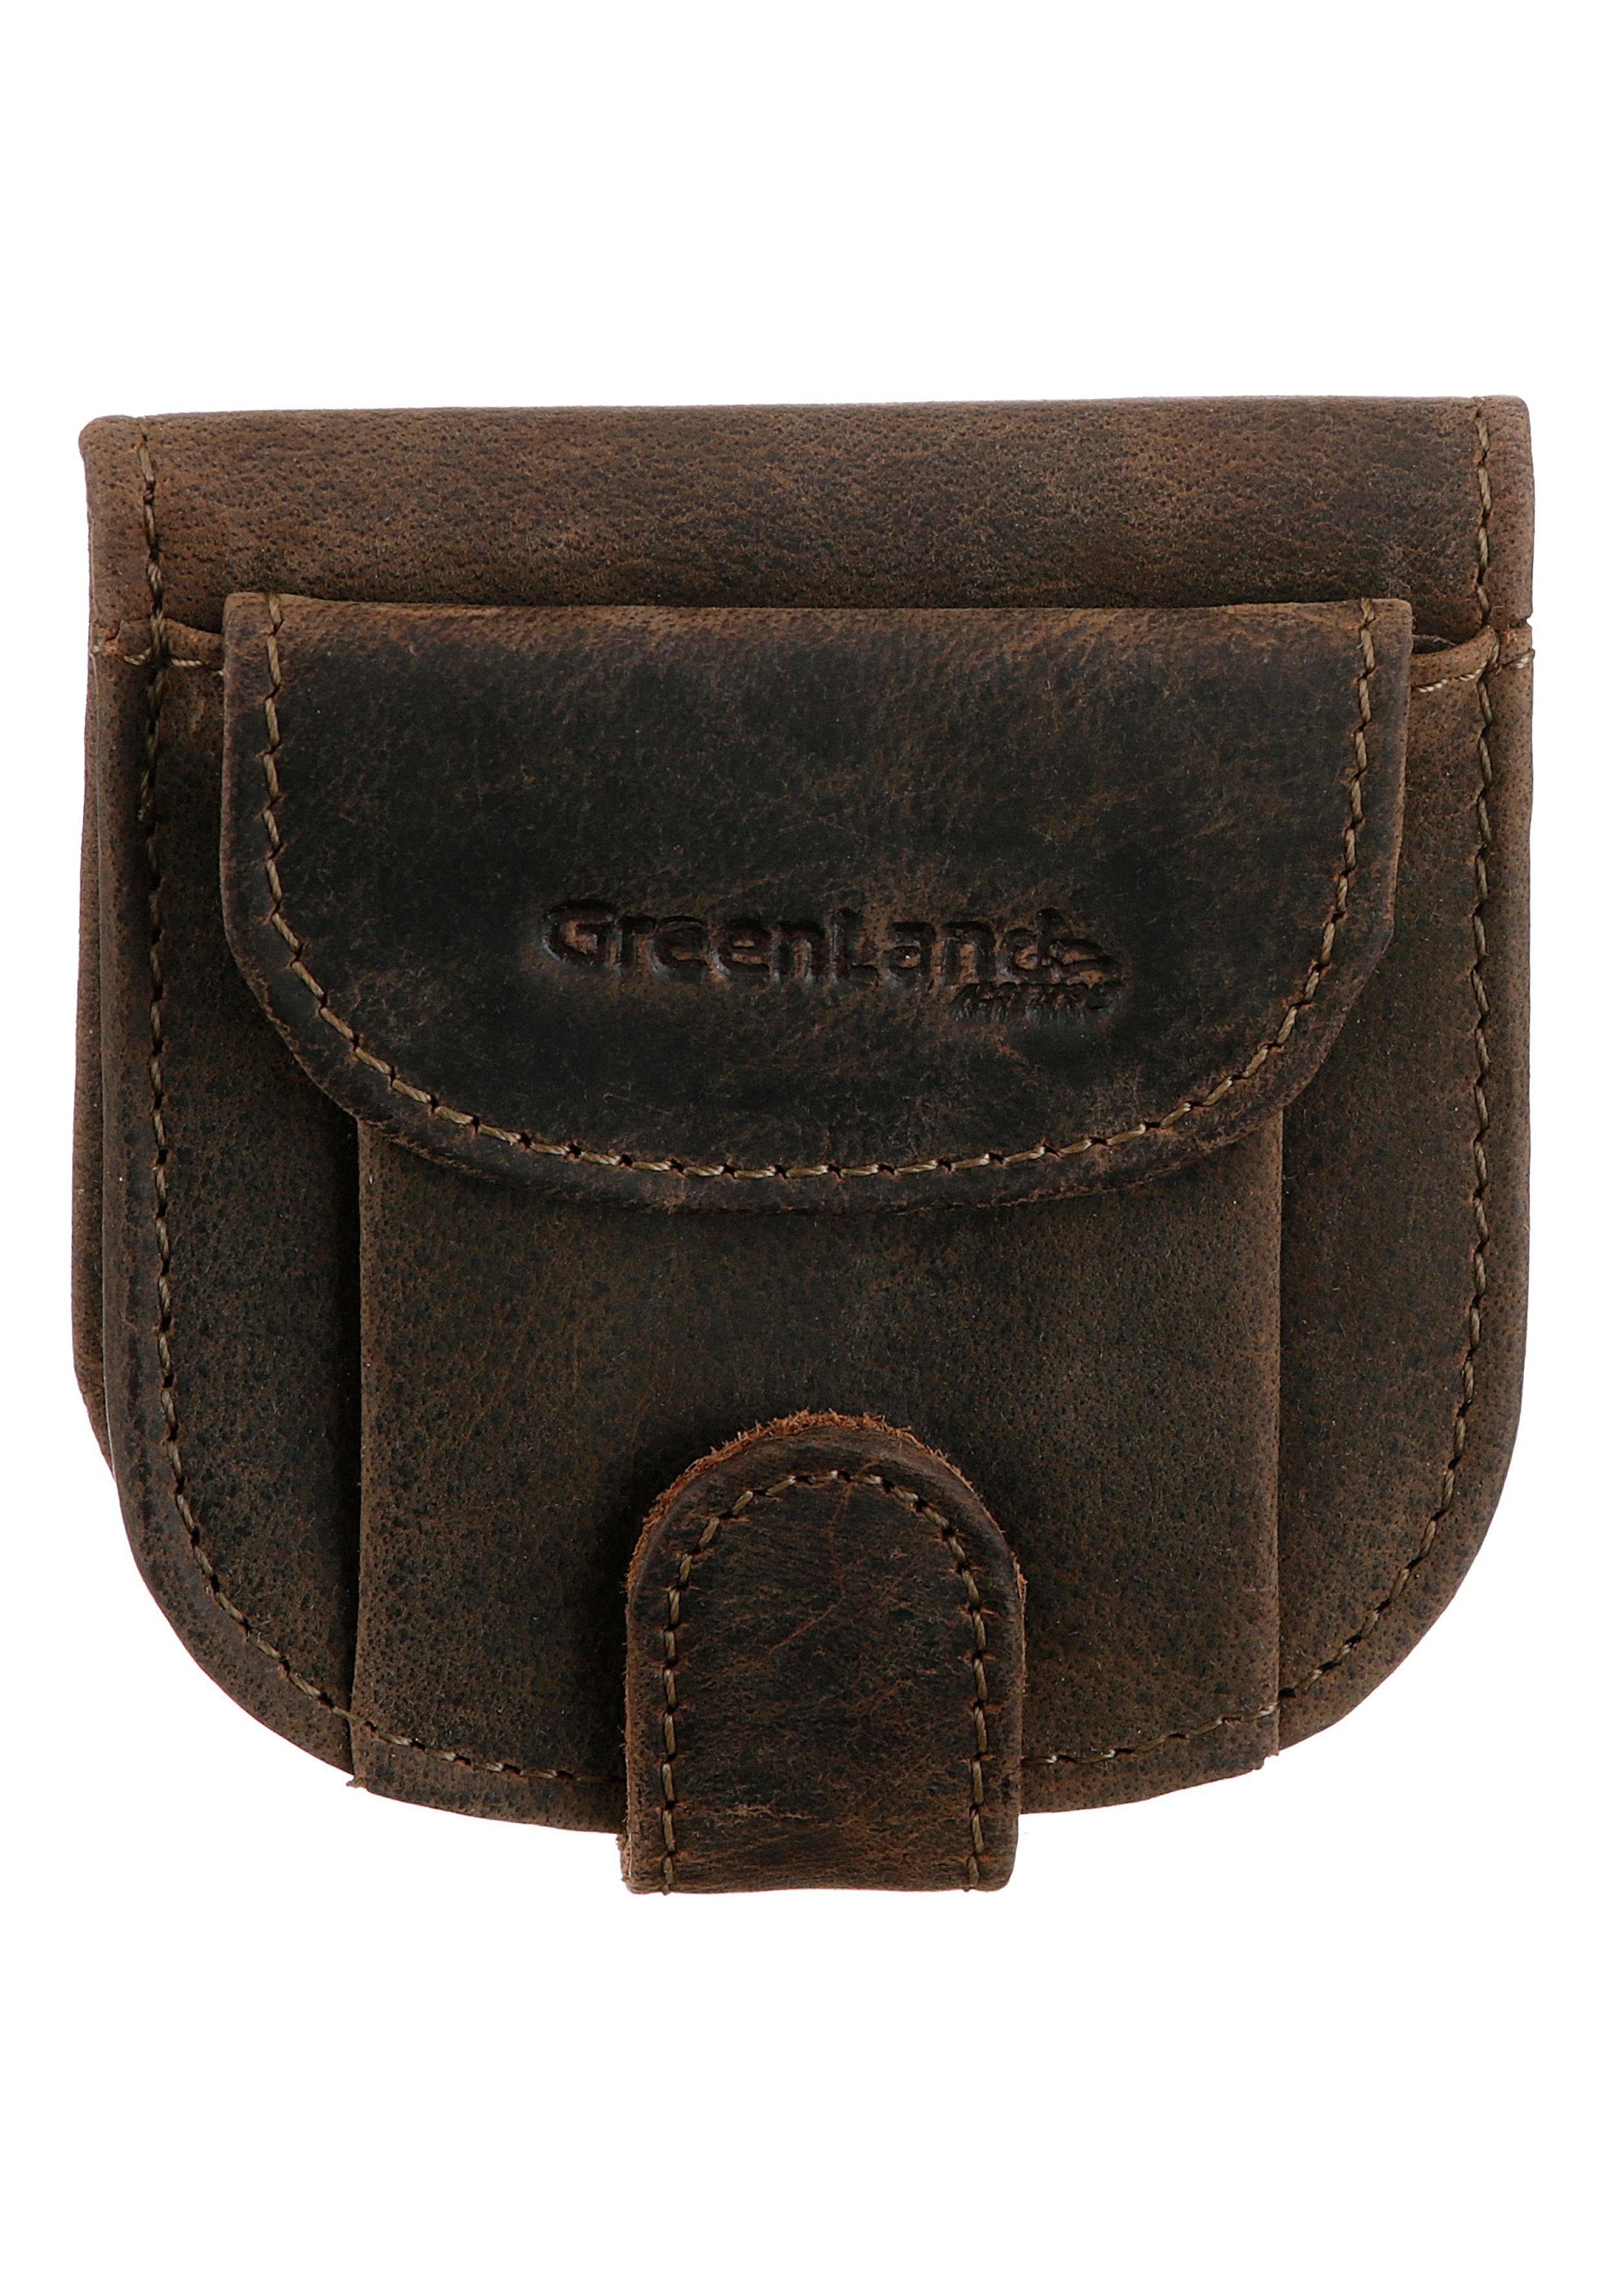 groß GreenLand Nature Geldbörse Stone, aus echtem Leder, im Format kleinen